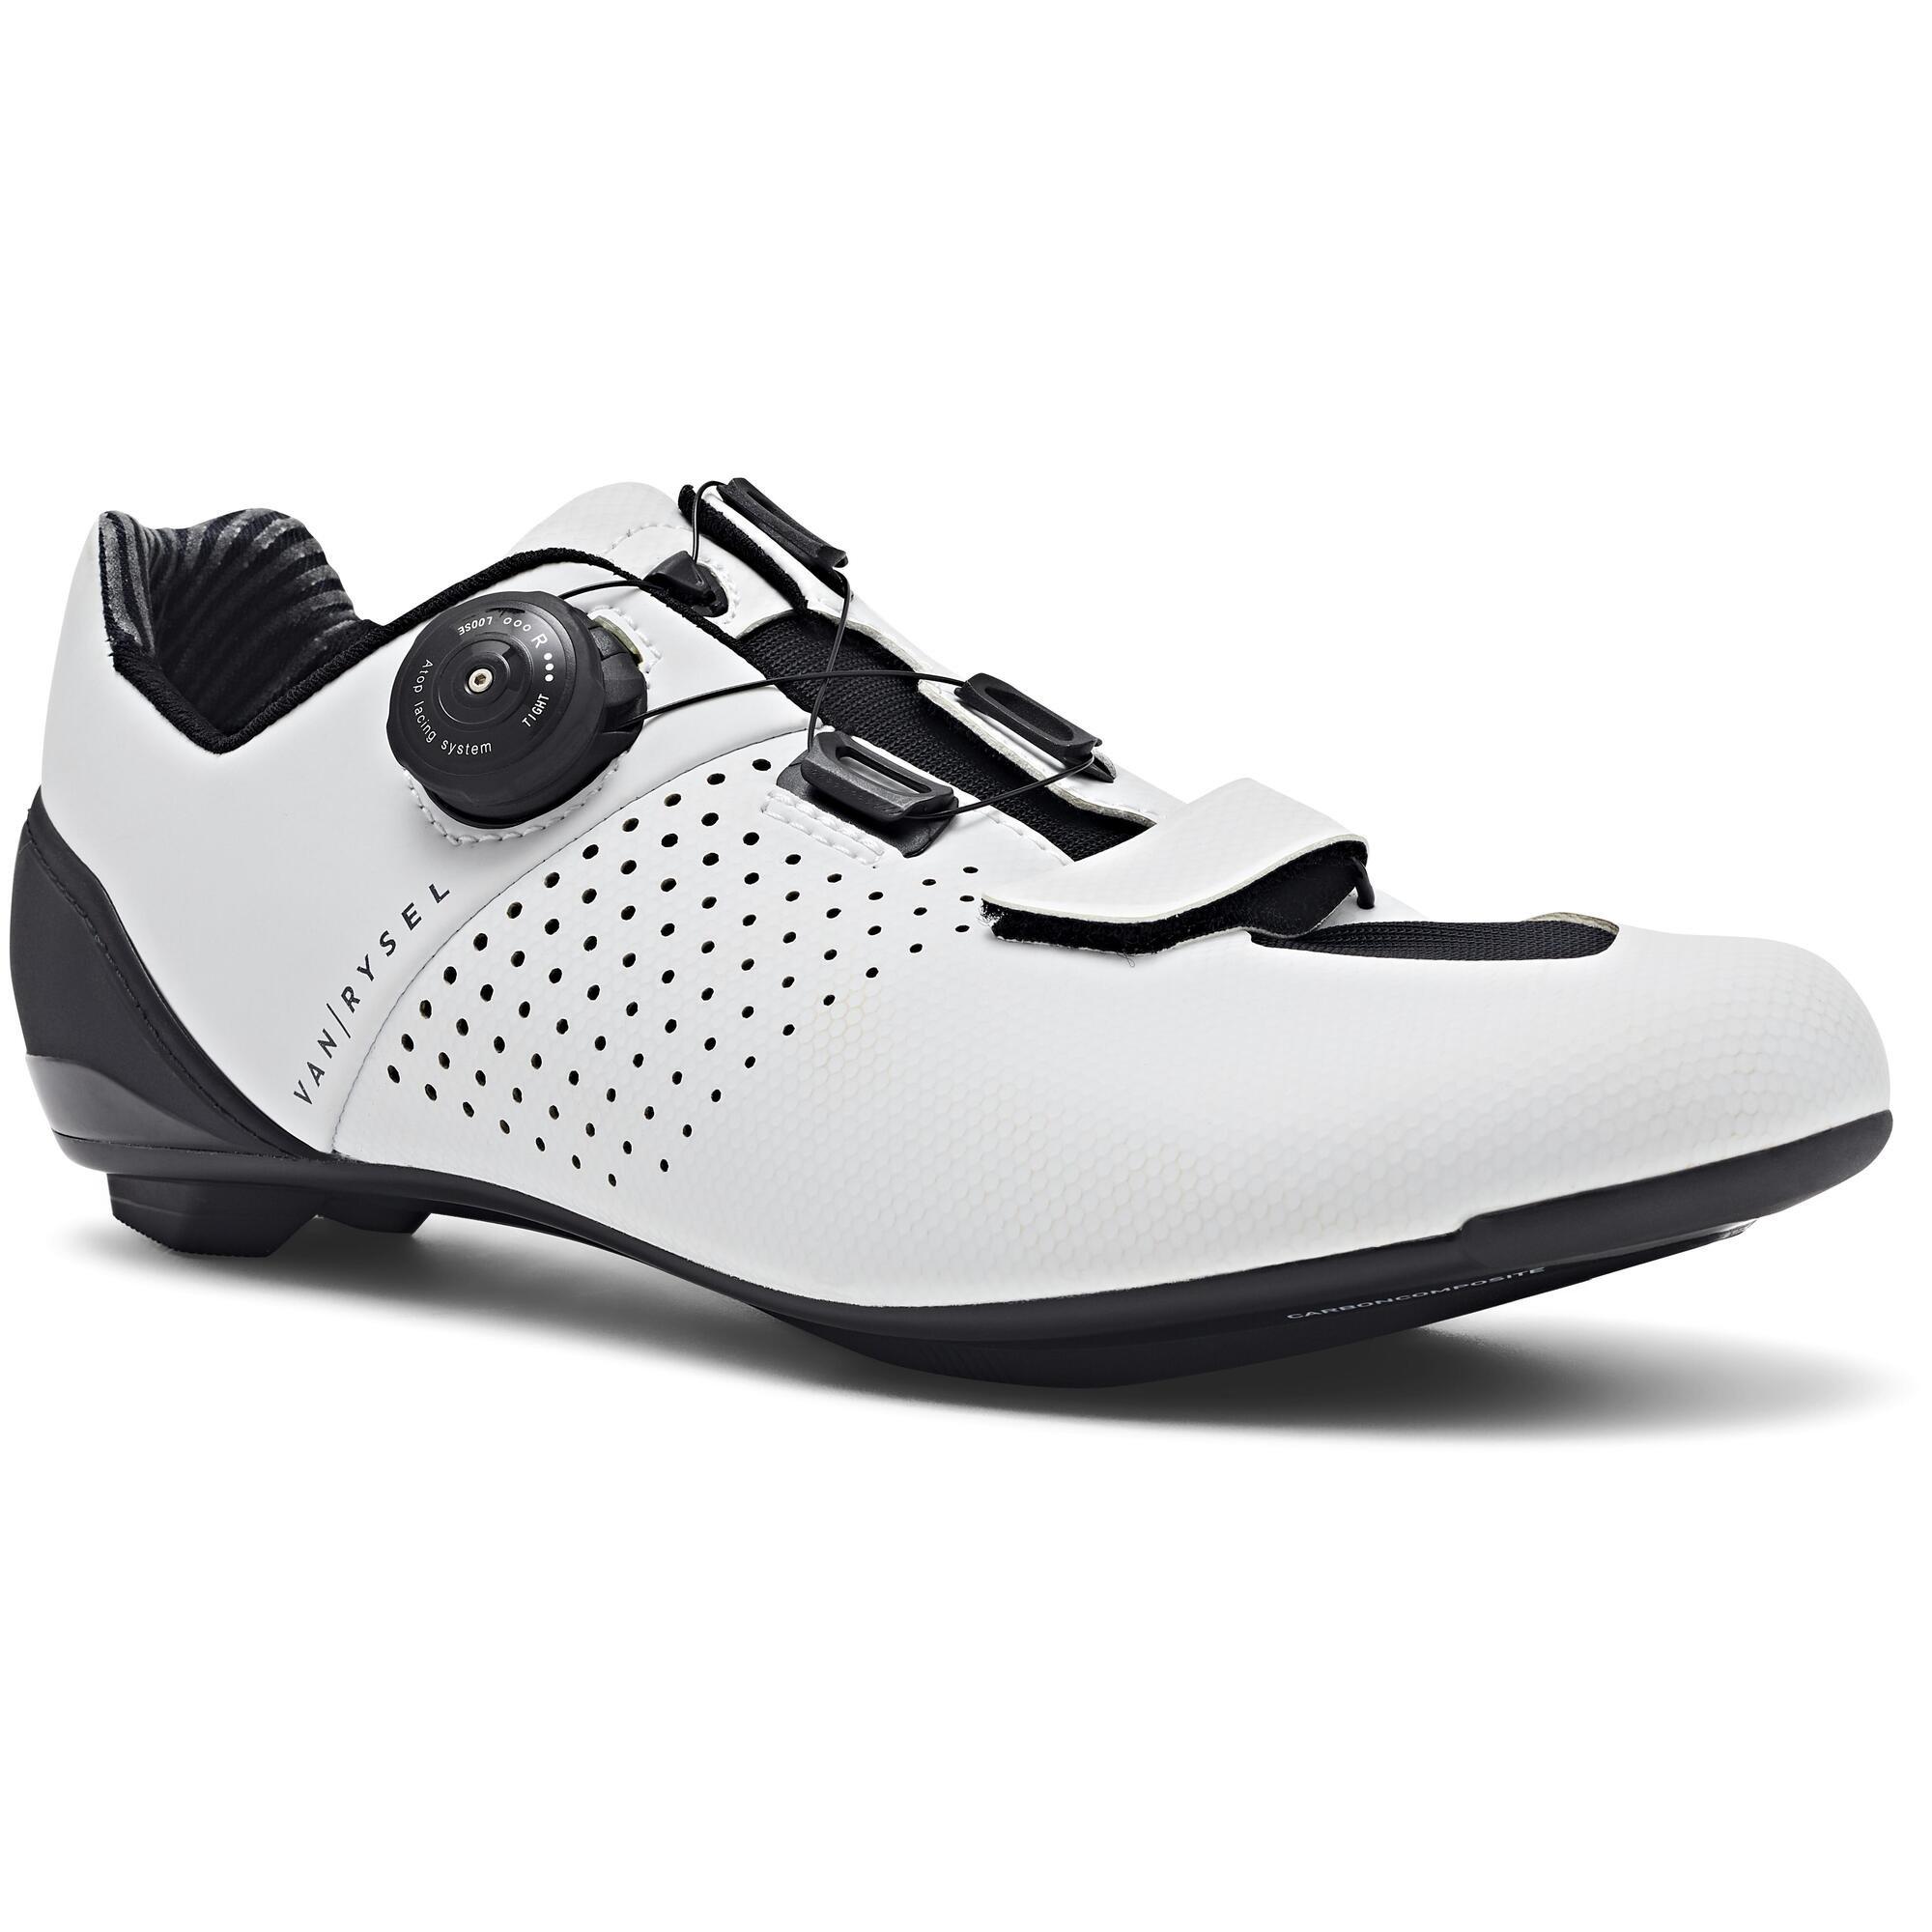 Спортивные кроссовки Decathlon Road Cycling Shoes Road 520 Van Rysel, белый